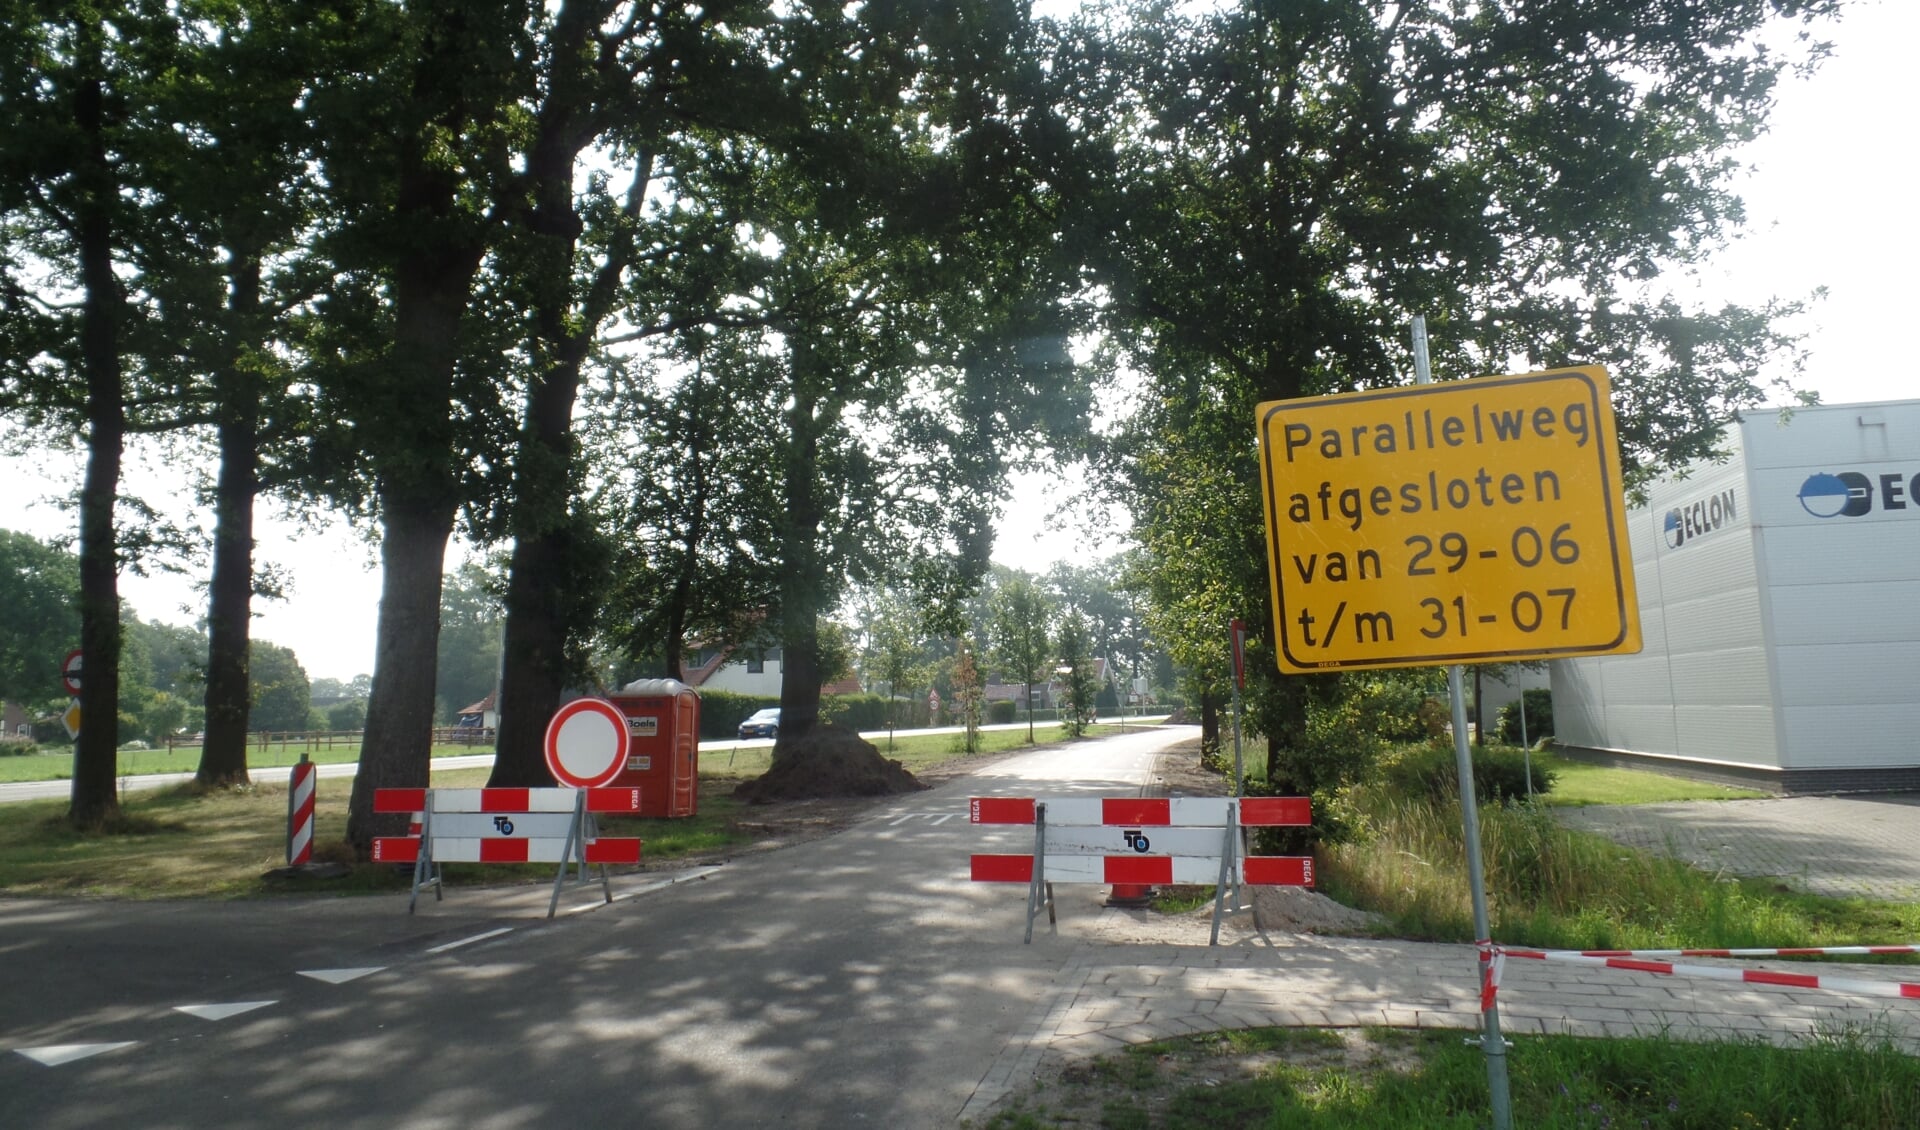 Het asfalt van de parallelweg was er zeer slecht aan toe en de bermen waren kapotgereden. De provincie Gelderland heeft daarom niet alleen voor een nieuw wegdek gezorgd maar worden de bermen van die parallelweg voorzien van grasbetonblokken. Foto: Jan Hendriksen. 